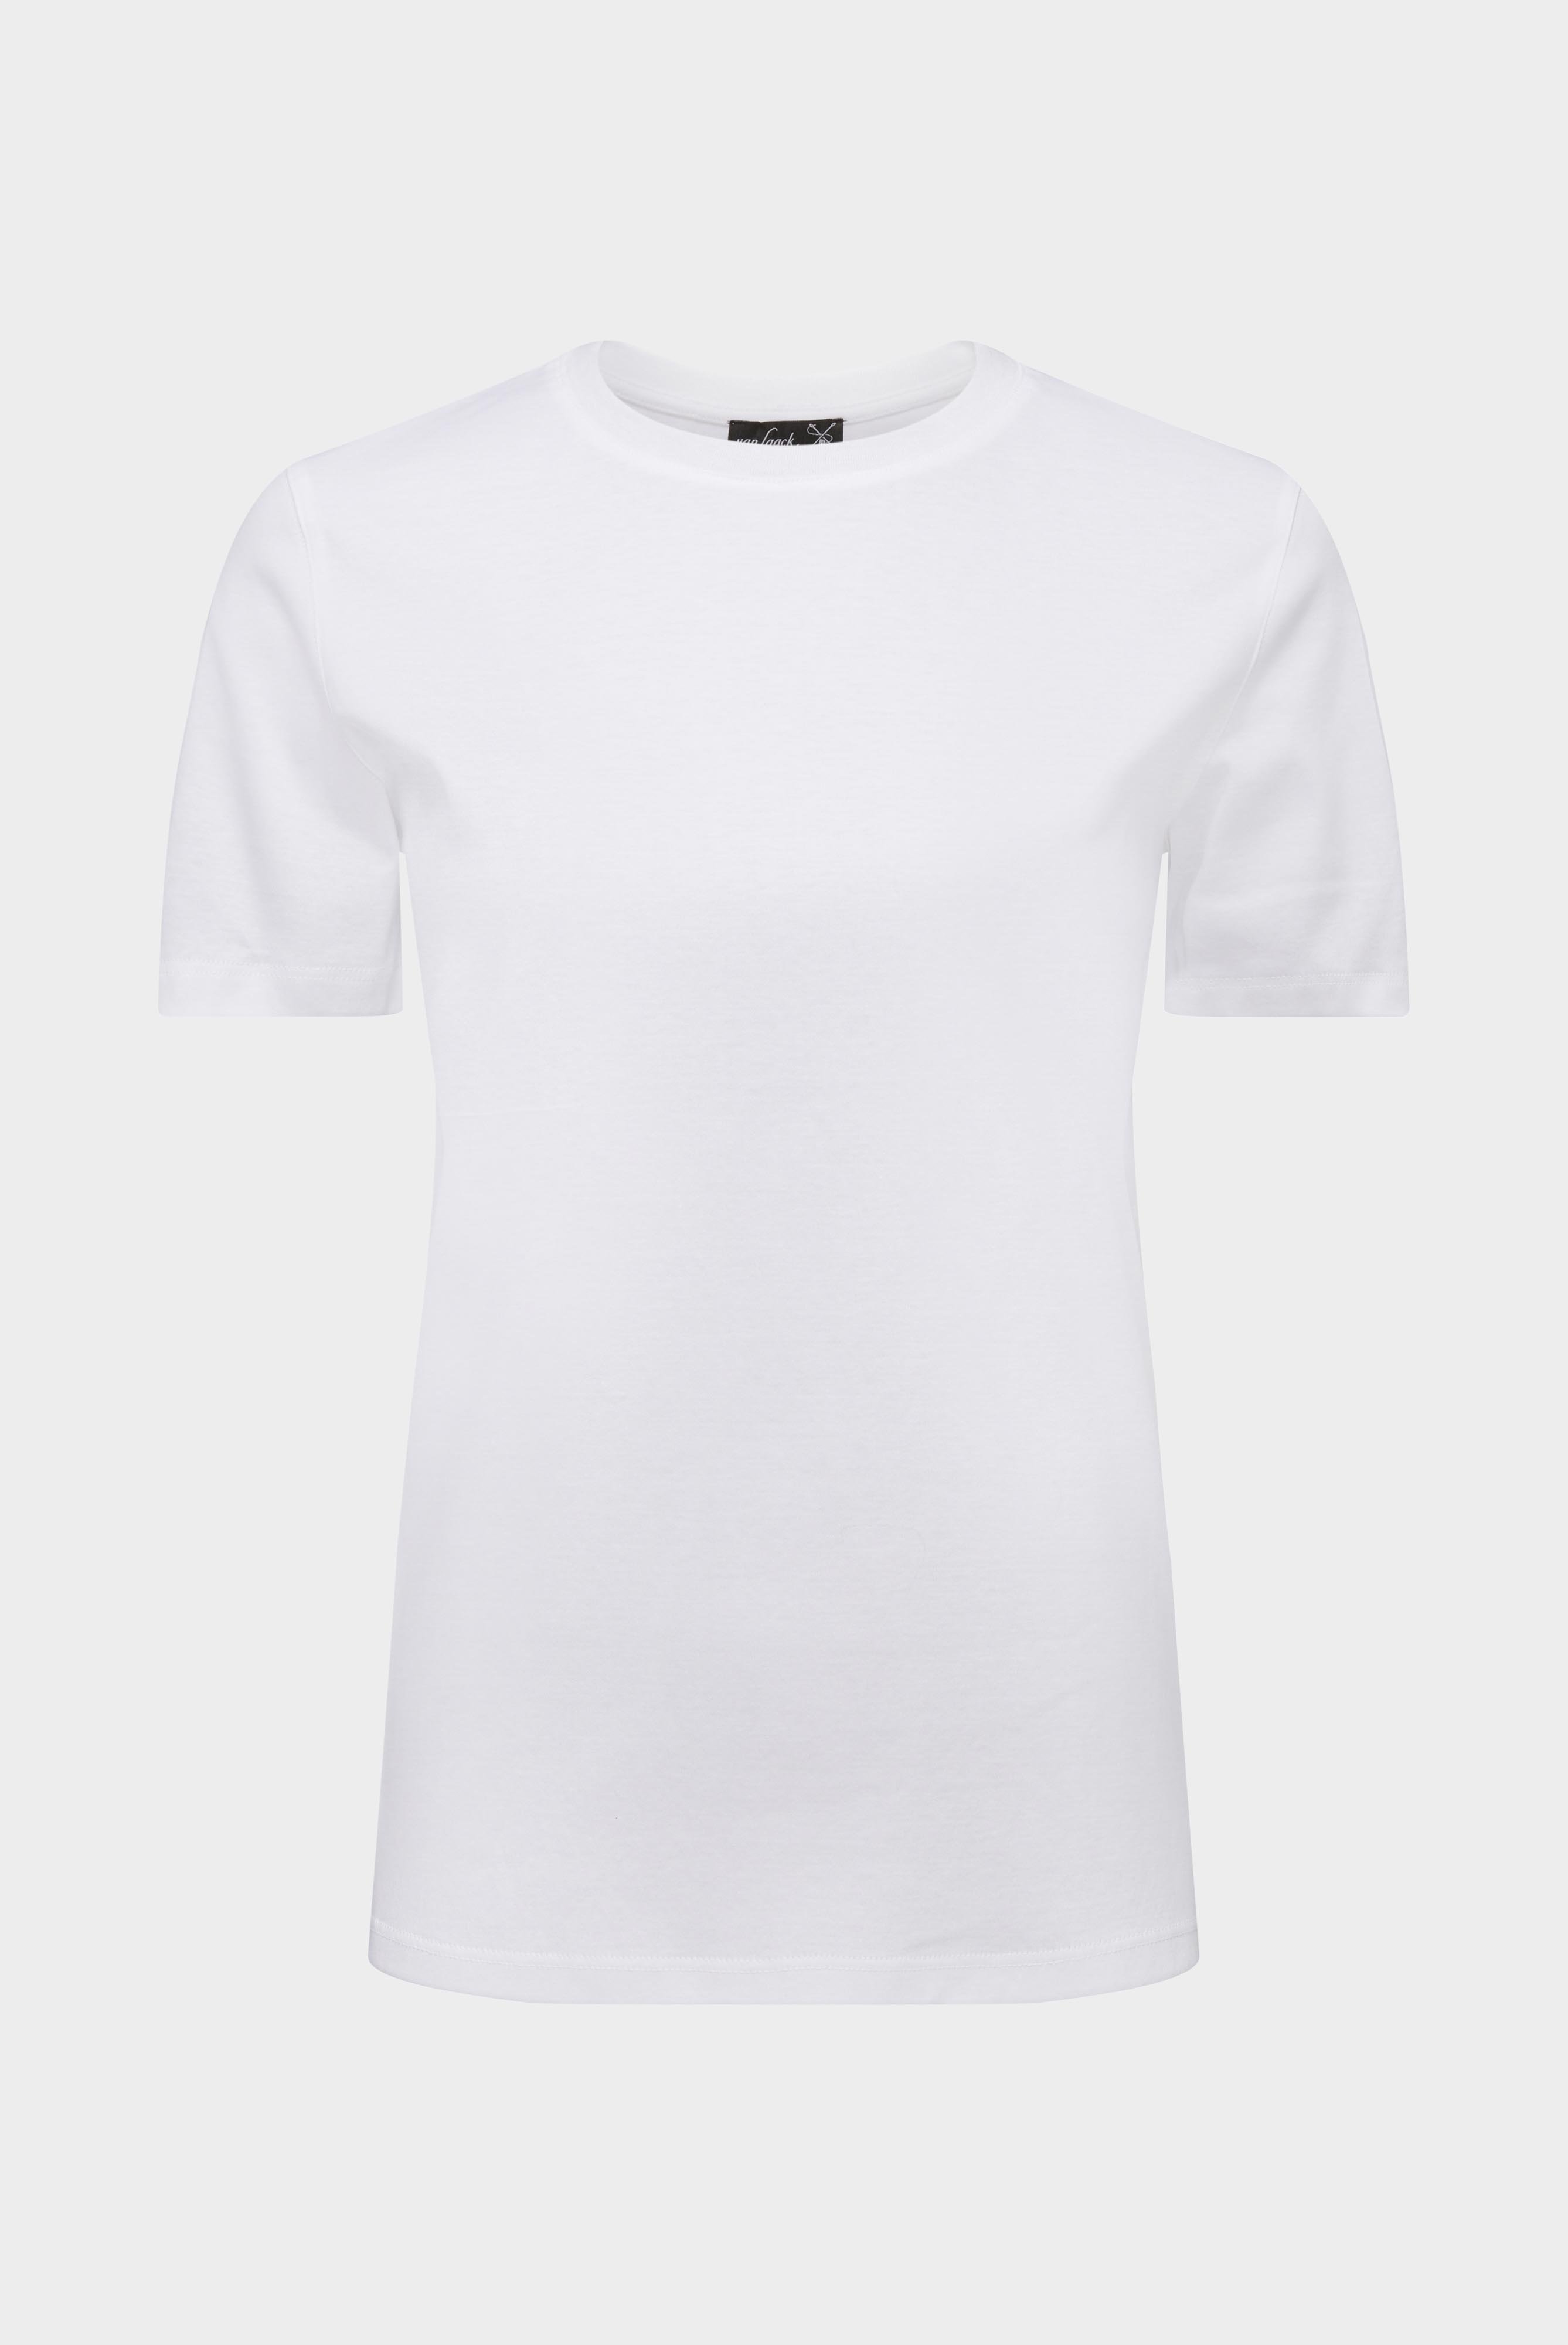 Tops & T-Shirts+Jersey T-Shirt+05.6384.18.180031.000.44